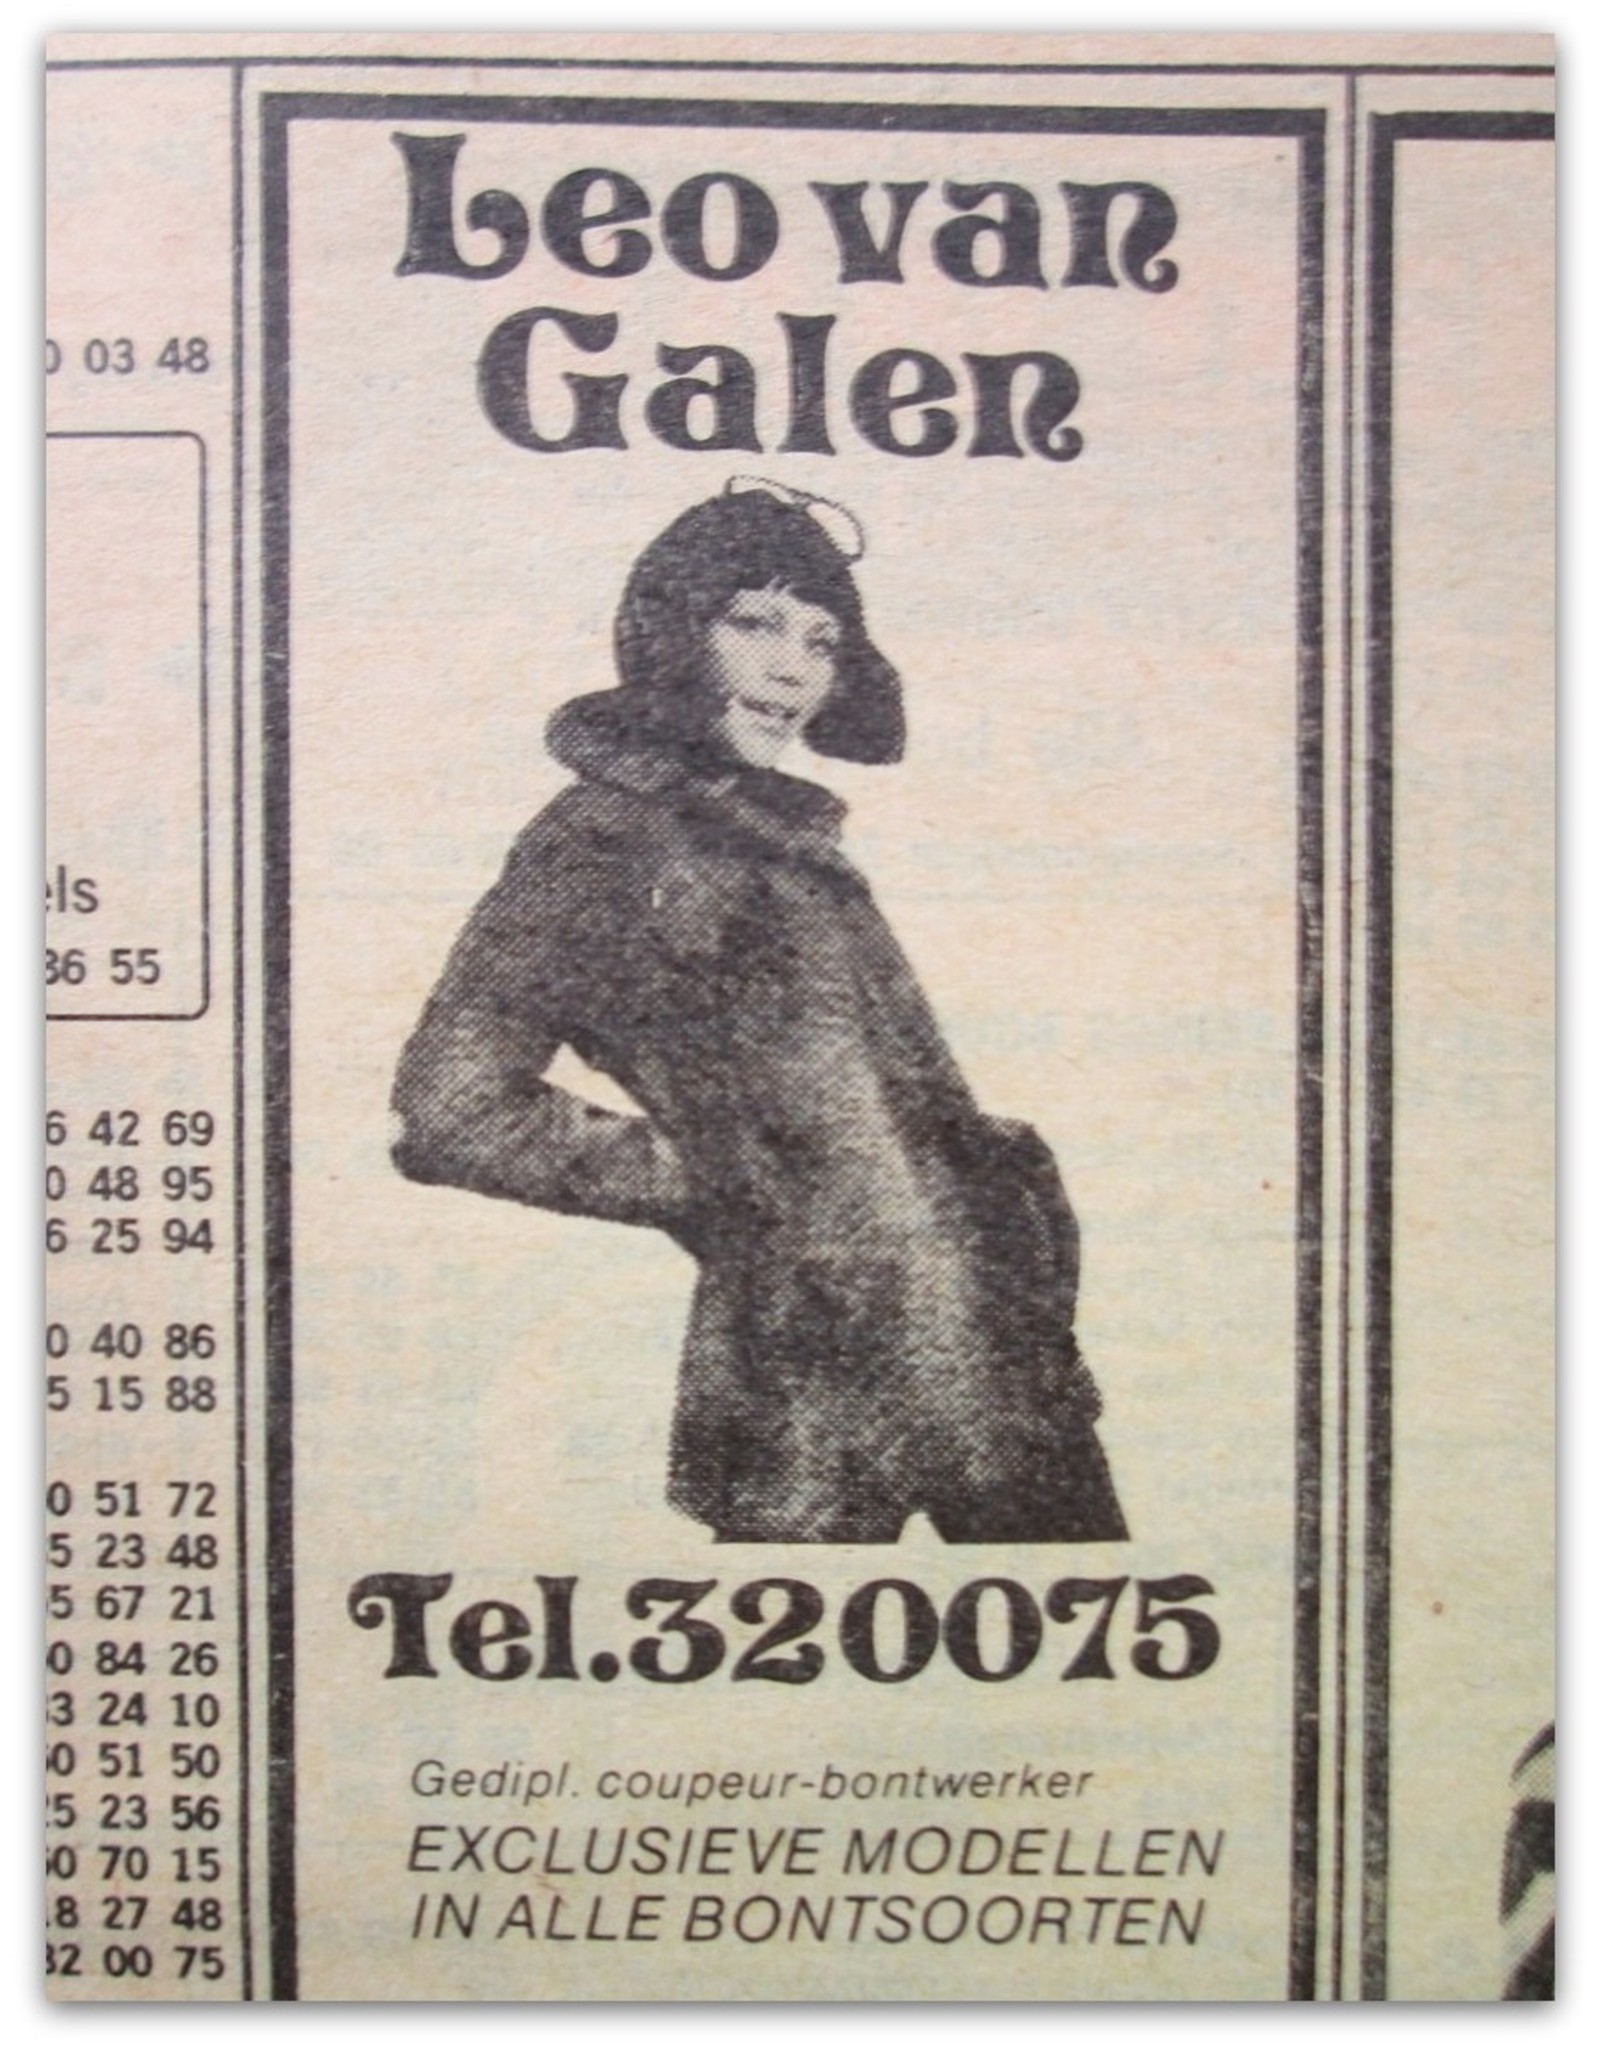 Gouden Gids Den Haag 1973/74 : De jaarlijkse zaken- en beroepengids, uitgegeven met medewerking van, en verspreid door P.T.T.